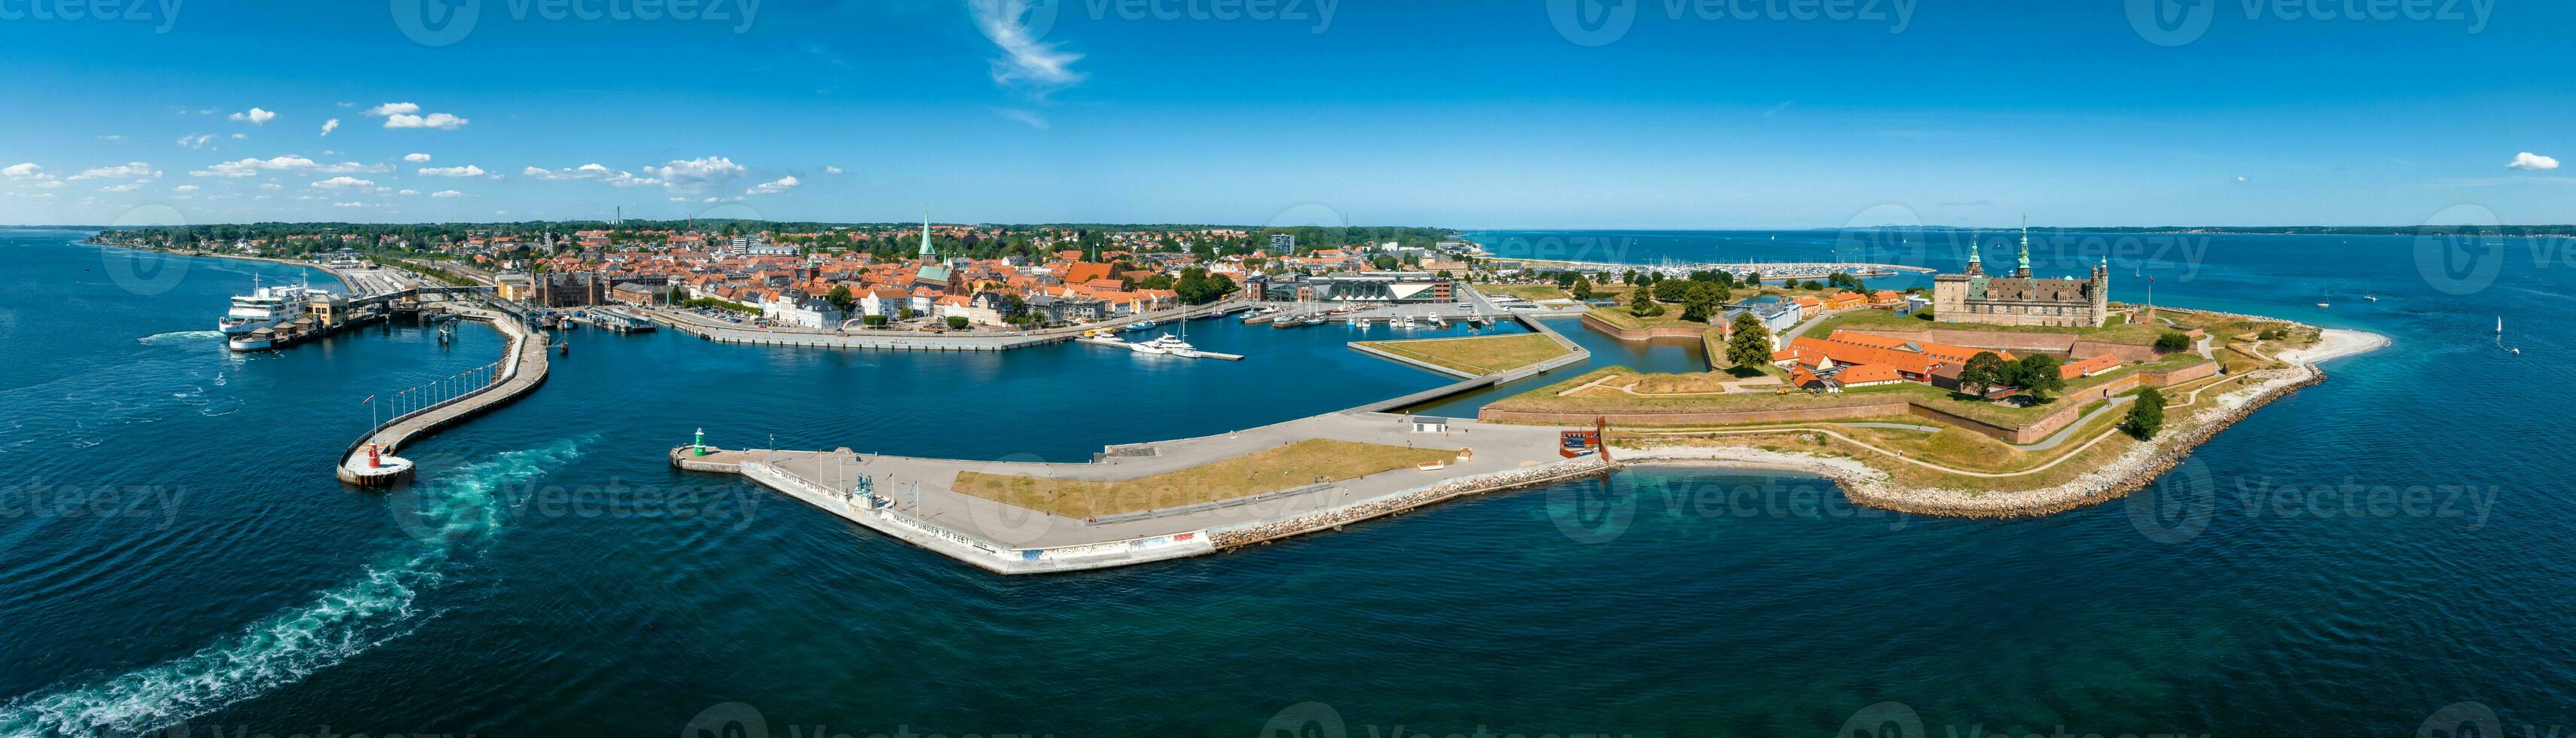 antenne visie van kronborg kasteel met wallen, ravelijn bewaken de Ingang naar de Baltisch zee foto